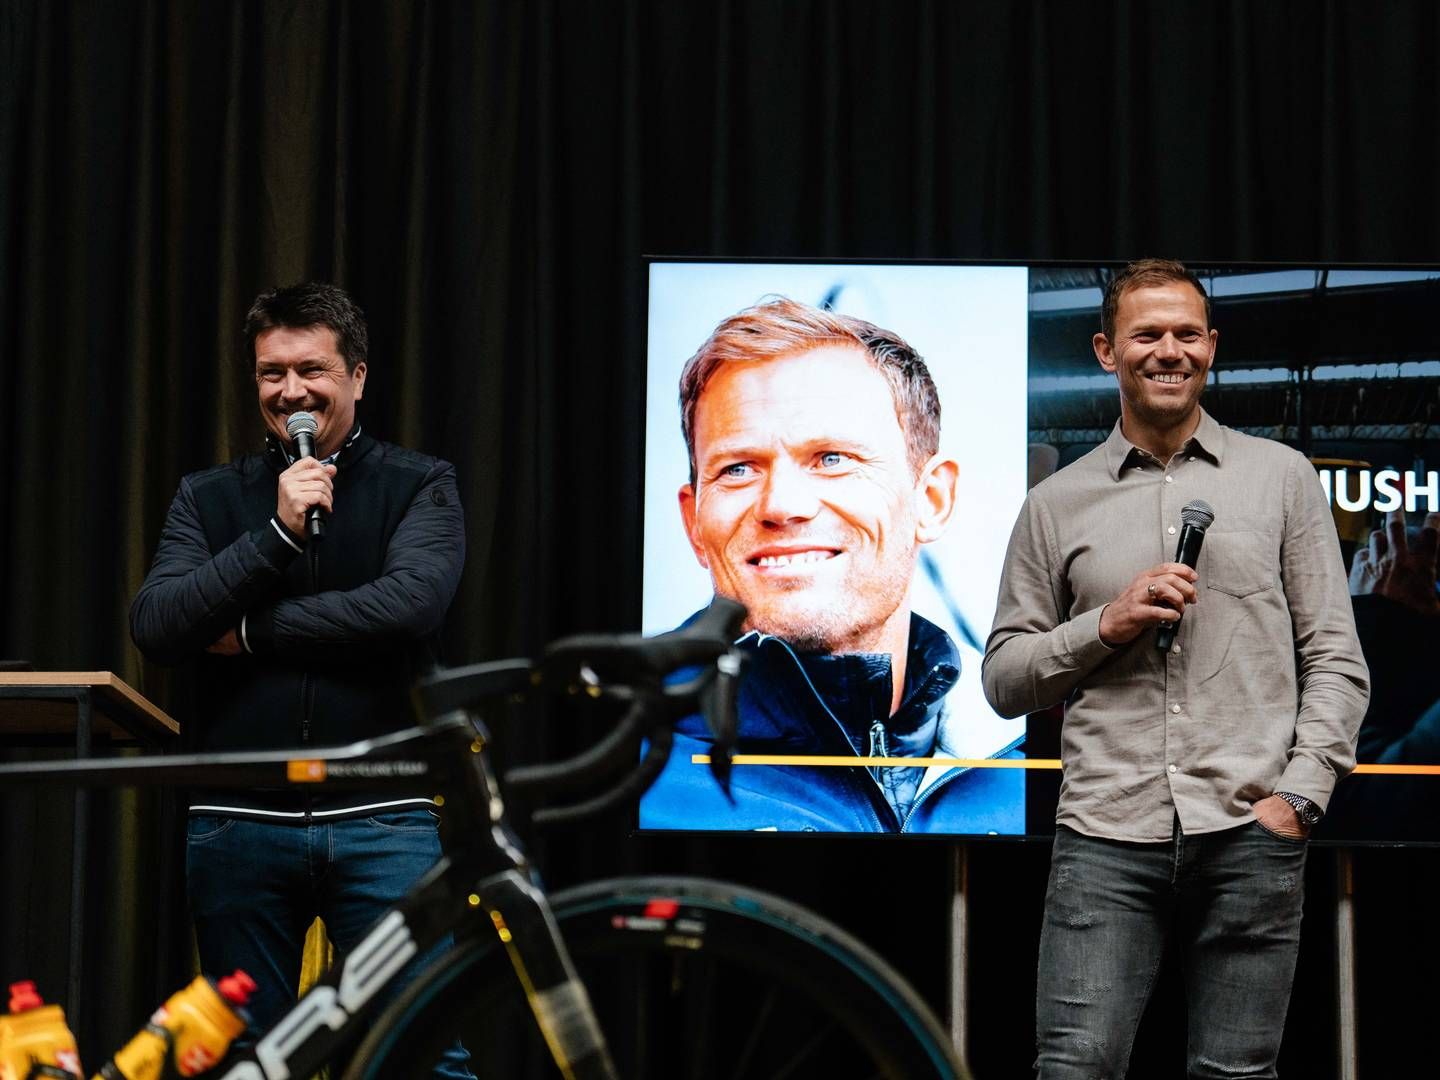 SAMARBEID: Administrerende direktør Ole Robert Reitan i Reitan Retail (til venstre) og syklist Thor Hushovd sammen under sykkelrittet Flandern rundt. Nå får begge nye roller i tilknytning til Reitan Retails sykkellag. | Foto: Uno-X